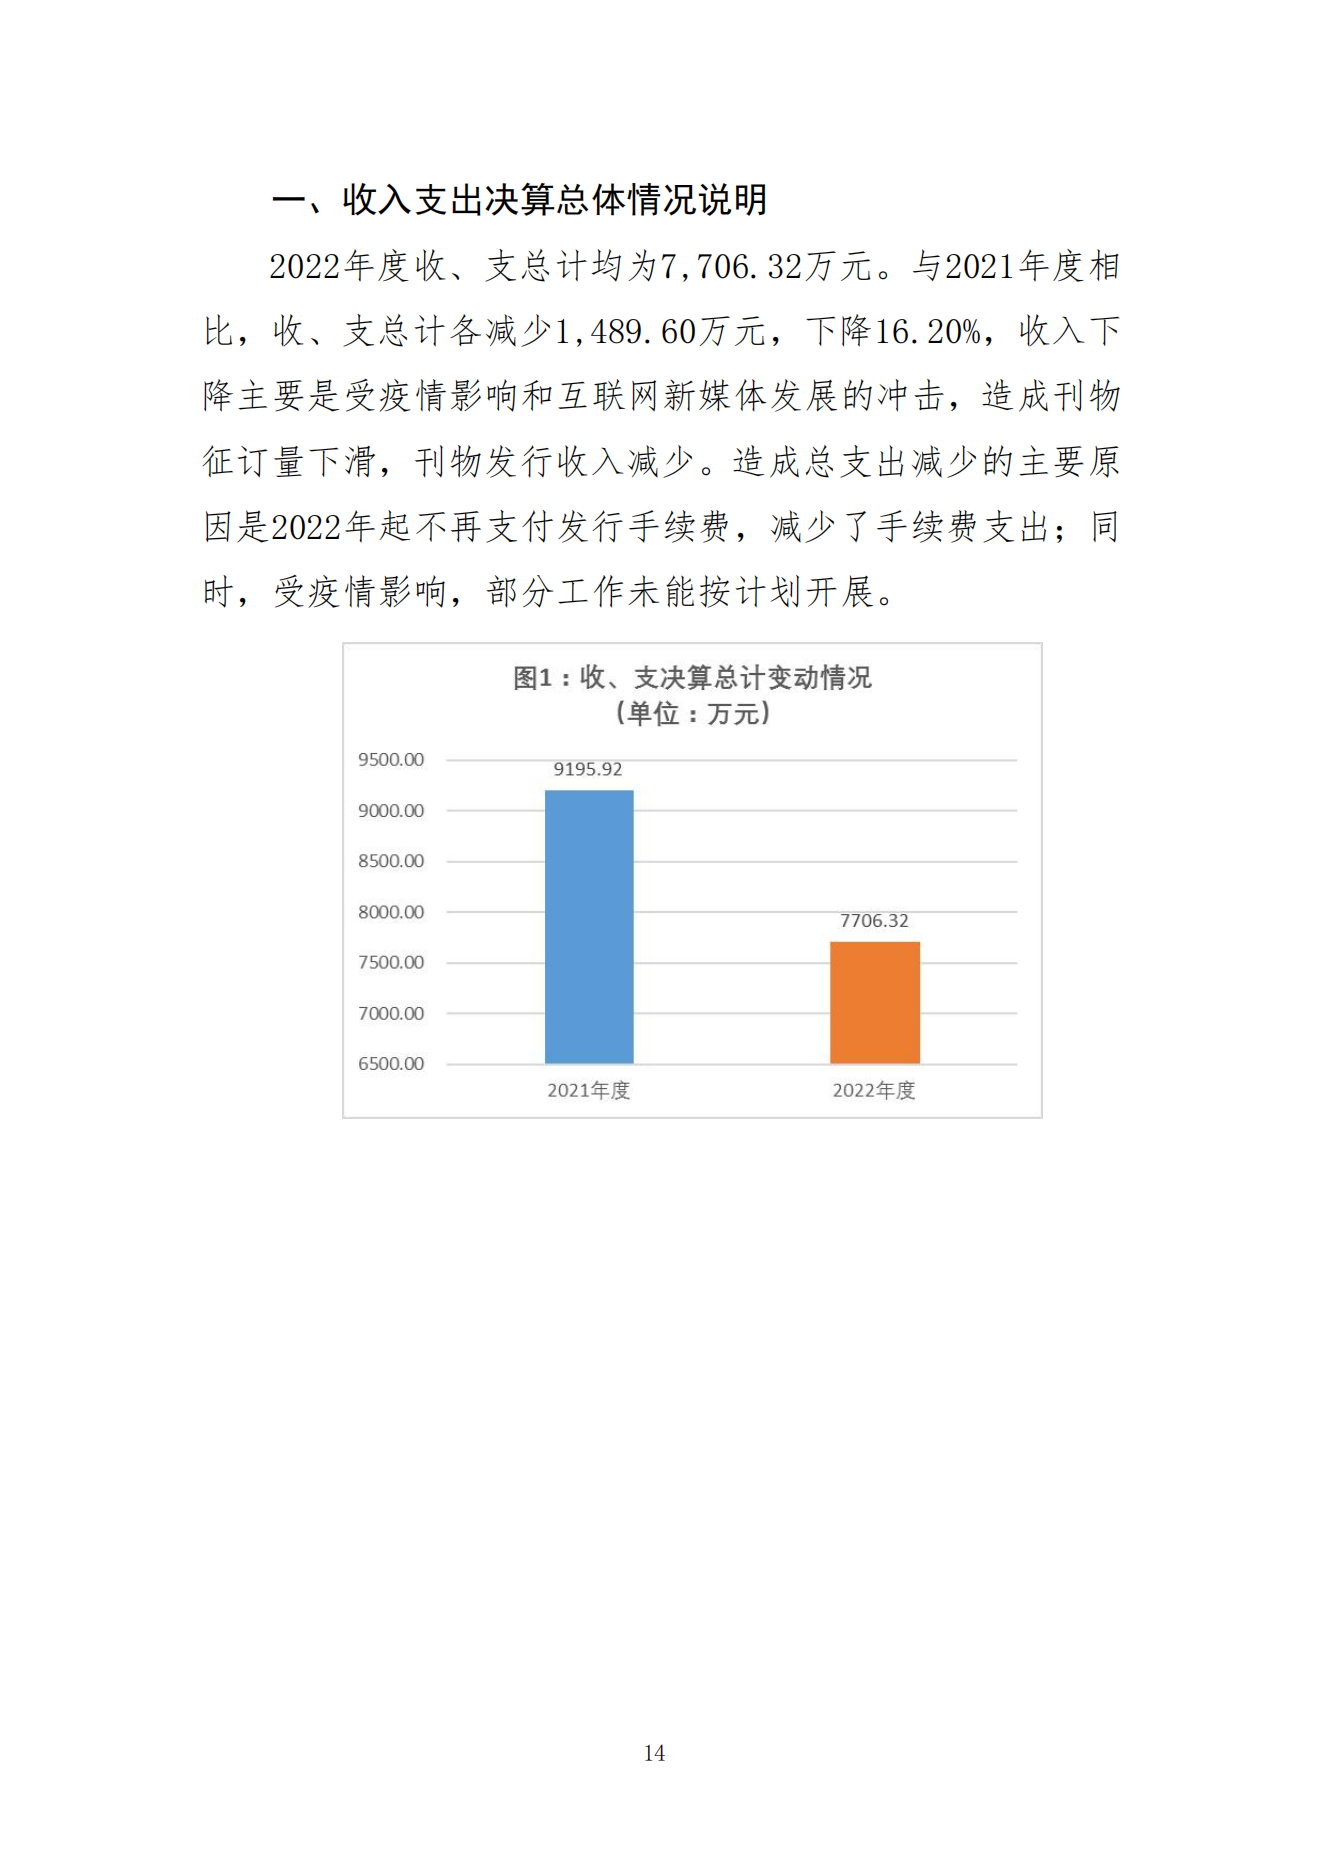 2023年8月7日 中国财政杂志社2022年度决算公开稿(1)_16.png